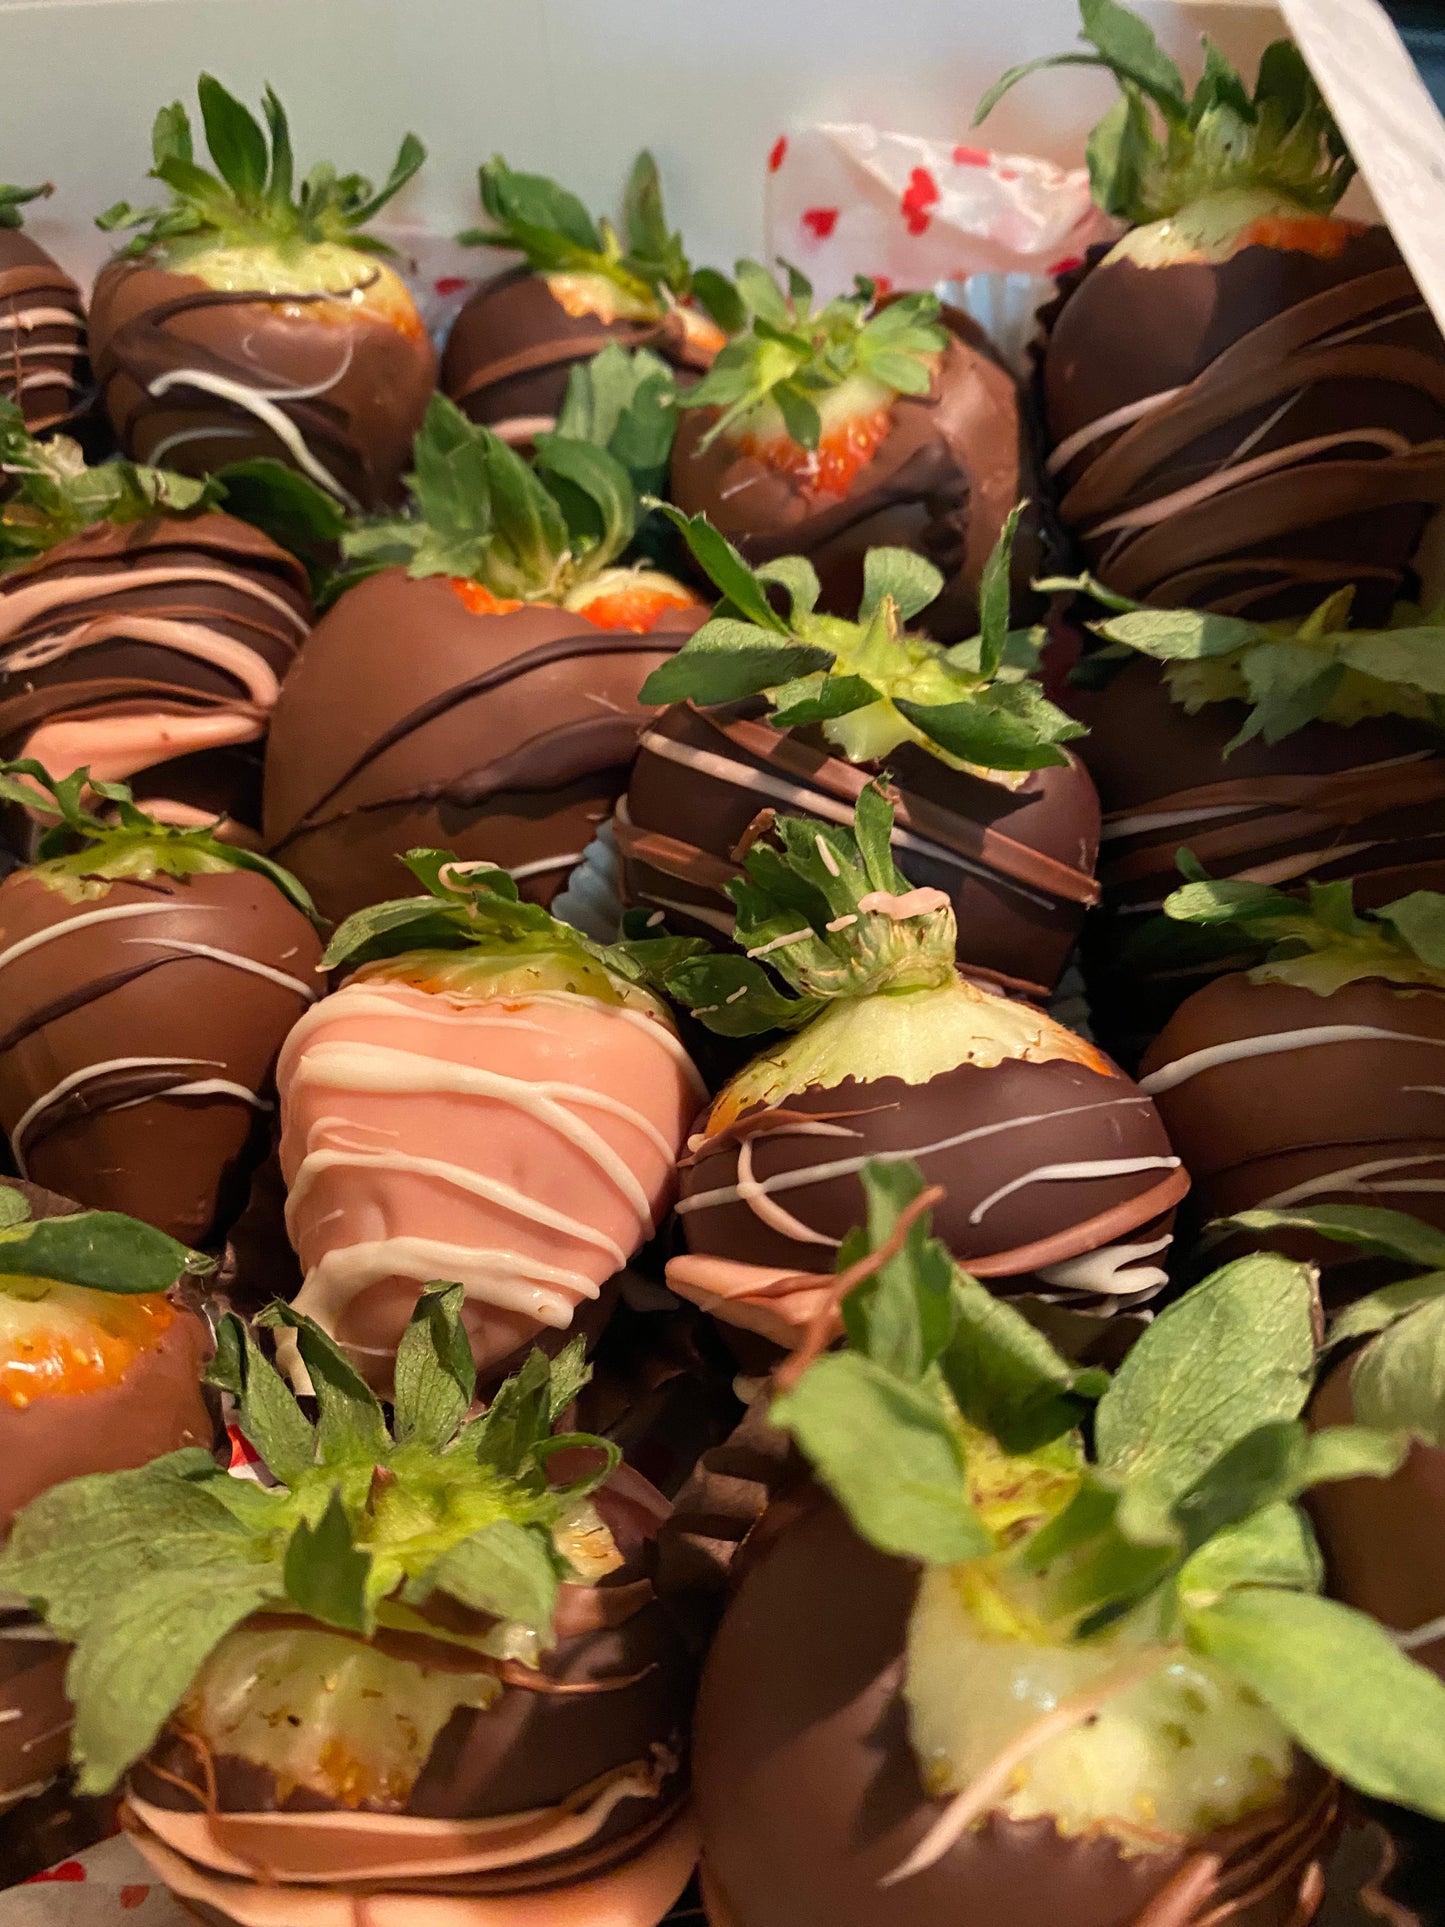 Dozen Chocolate Covered Strawberries